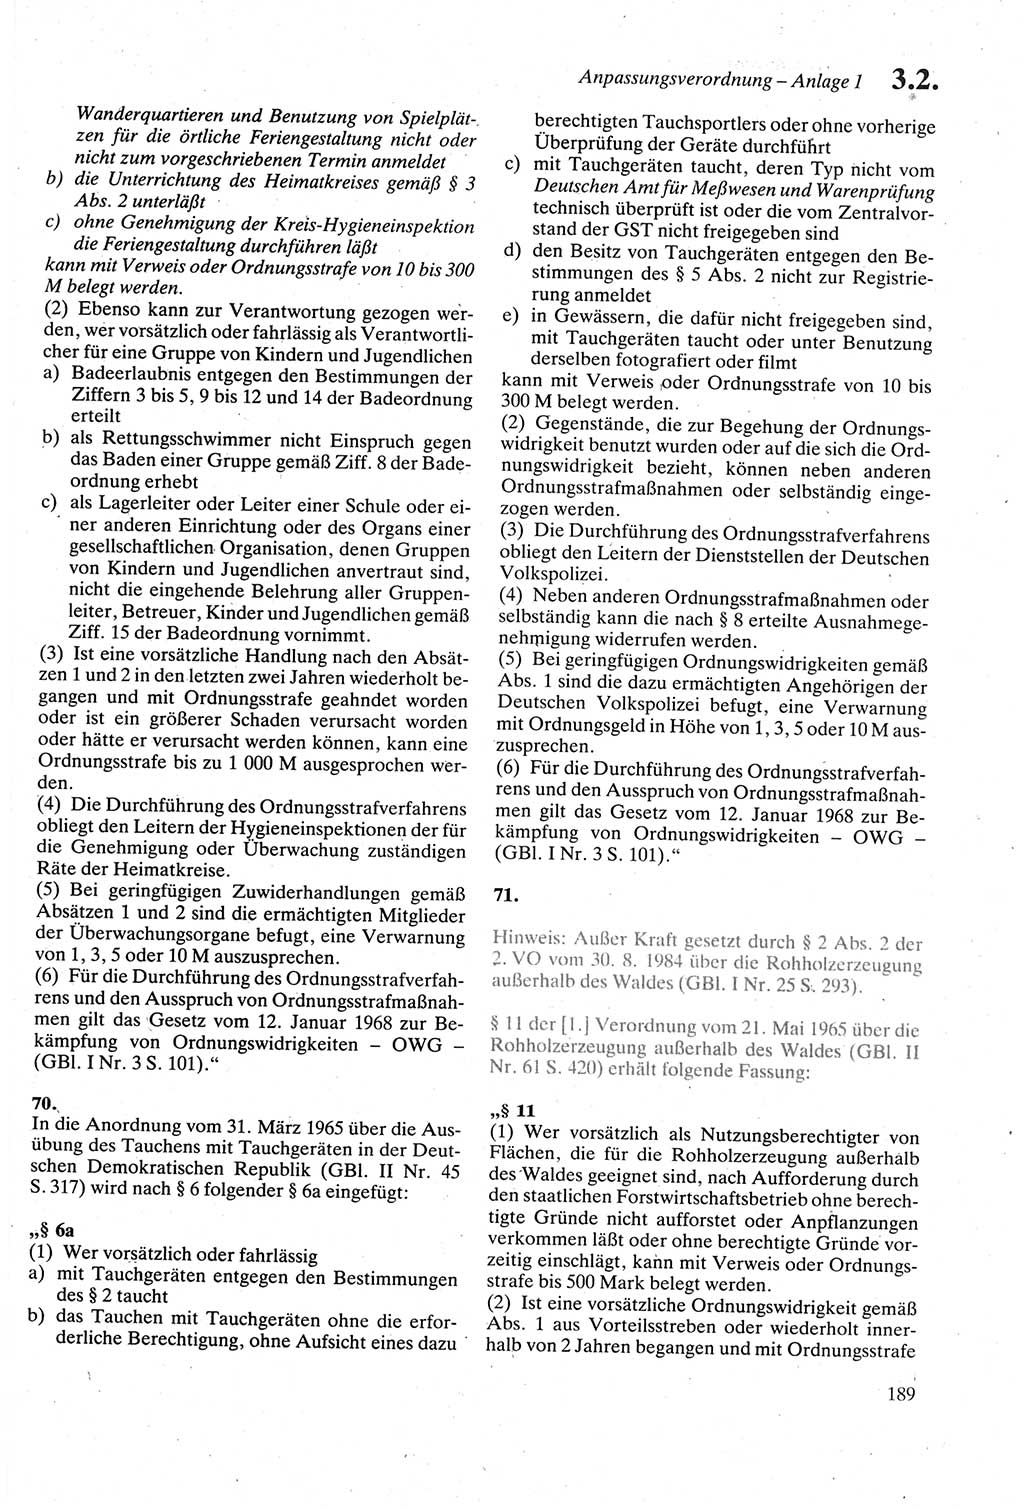 Strafgesetzbuch (StGB) der Deutschen Demokratischen Republik (DDR) sowie angrenzende Gesetze und Bestimmungen 1979, Seite 189 (StGB DDR Ges. Best. 1979, S. 189)